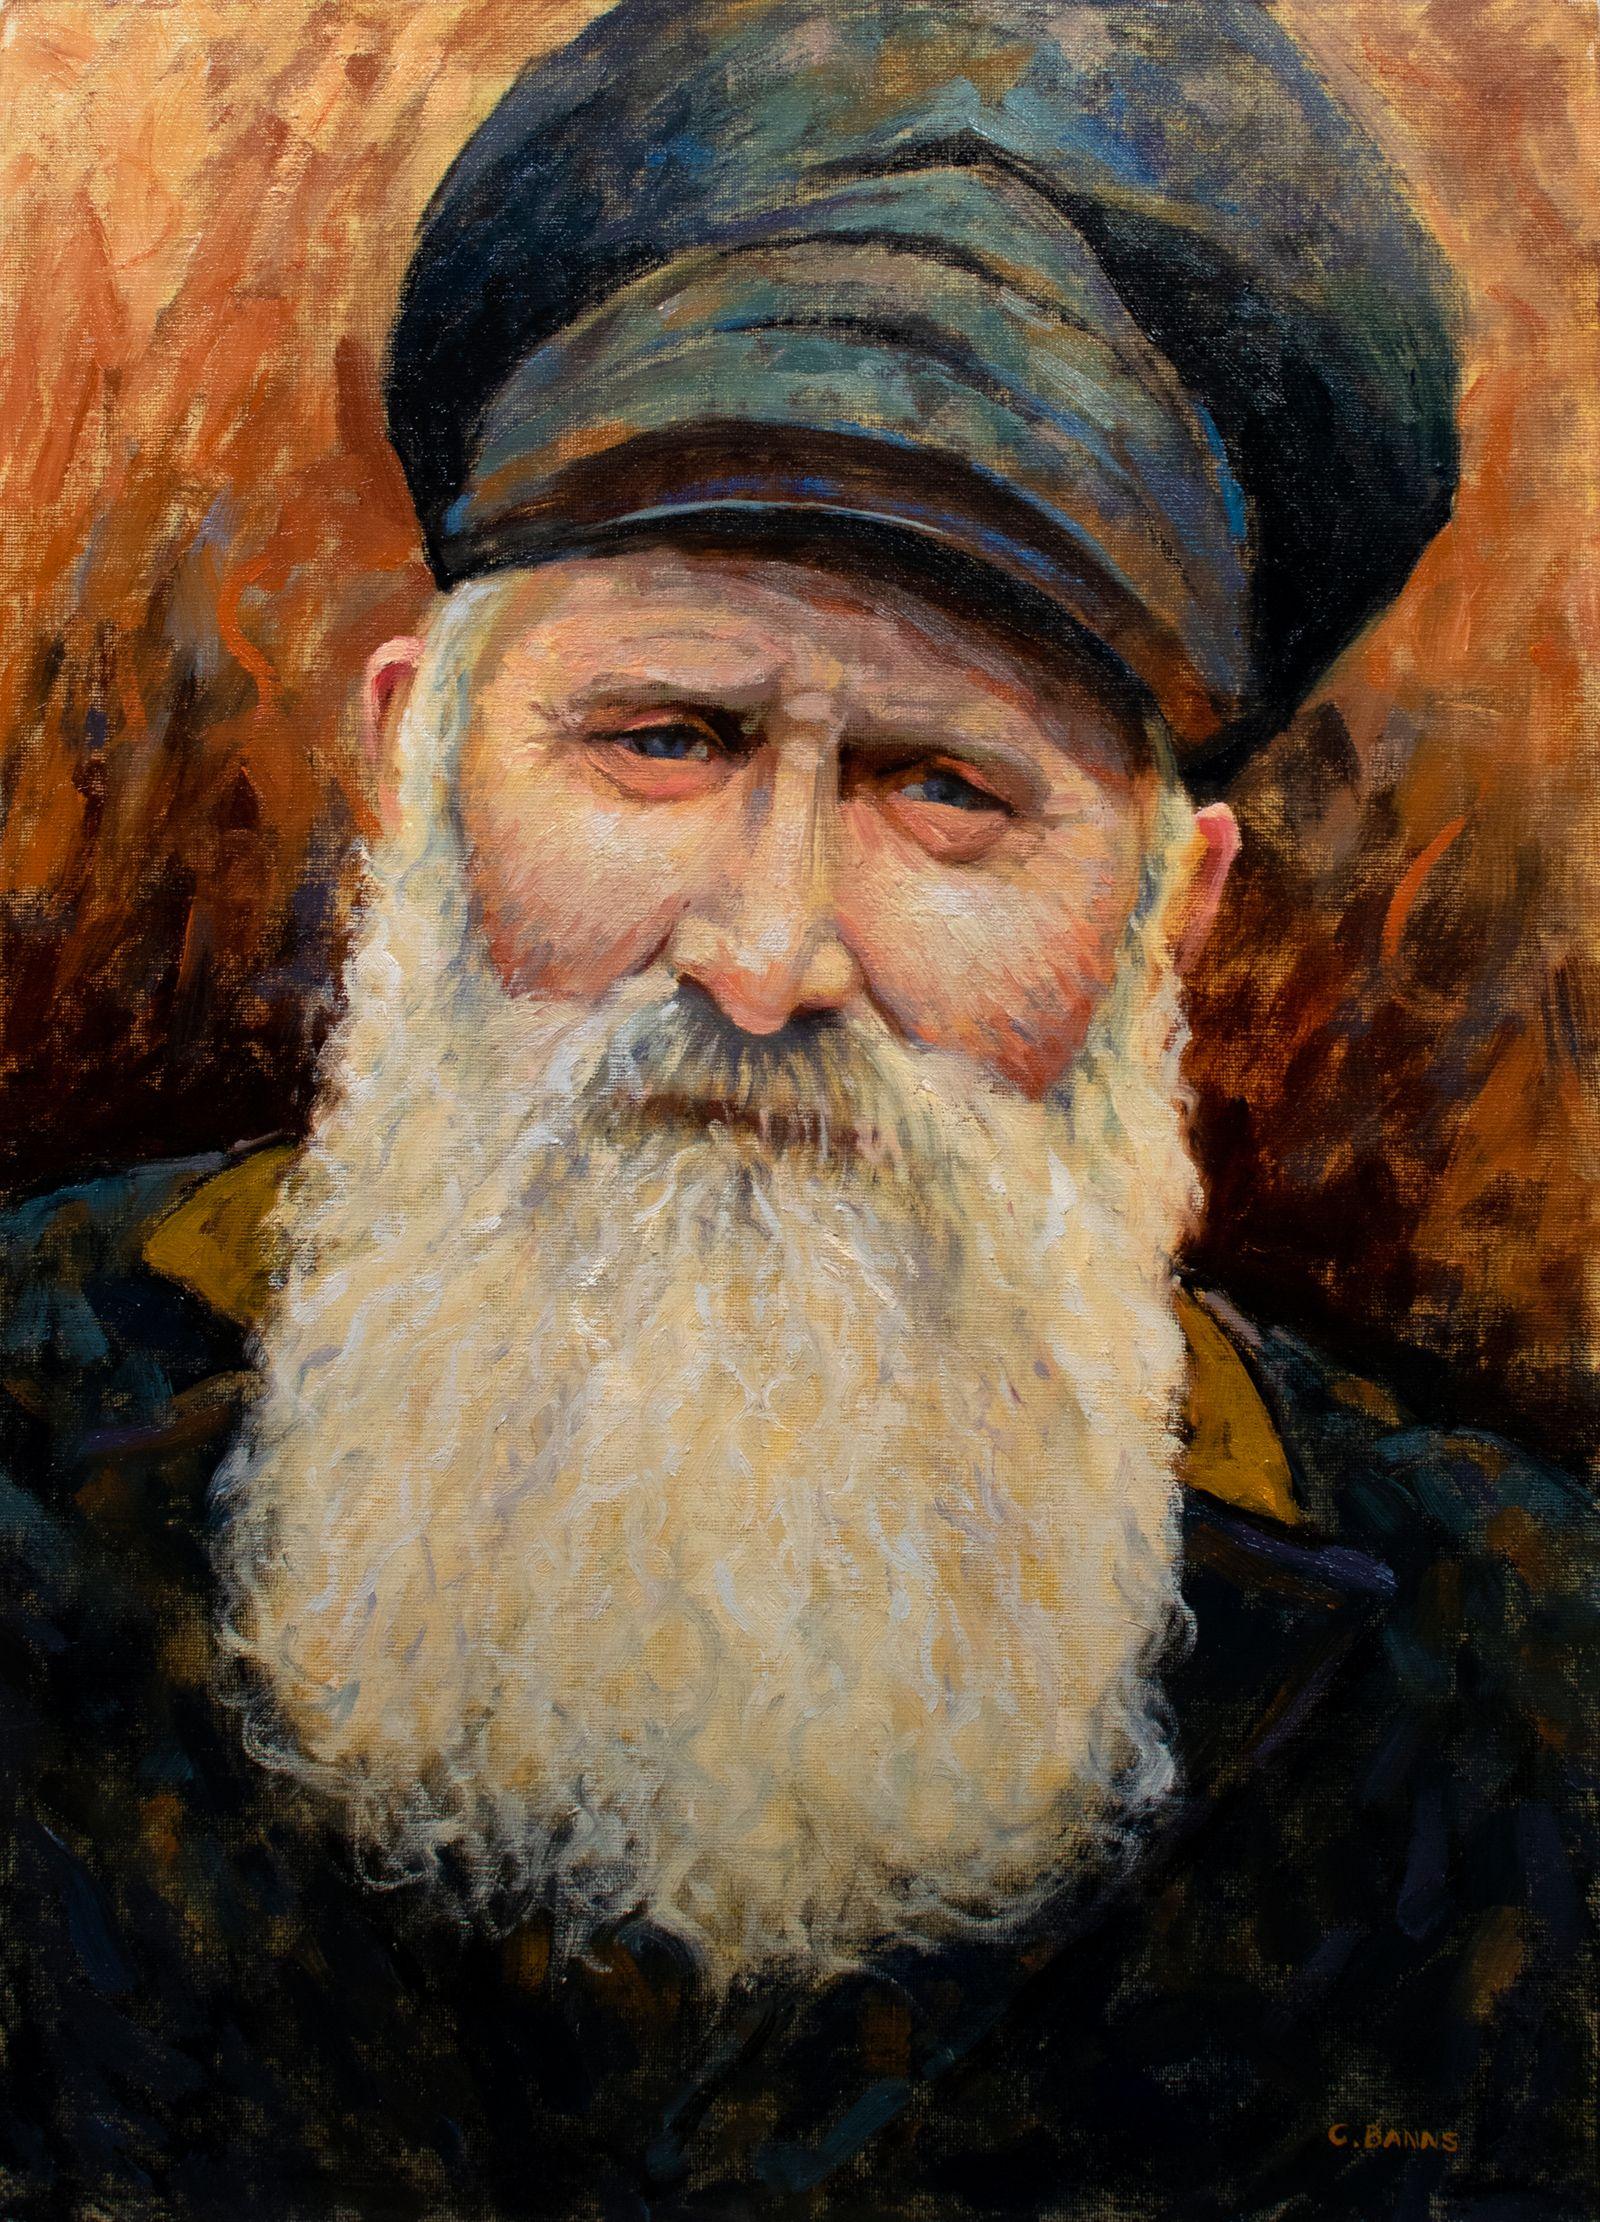 The Old Bearded Sailor, portrait impressionniste, peinture, huile sur toile - Painting de Gav Banns